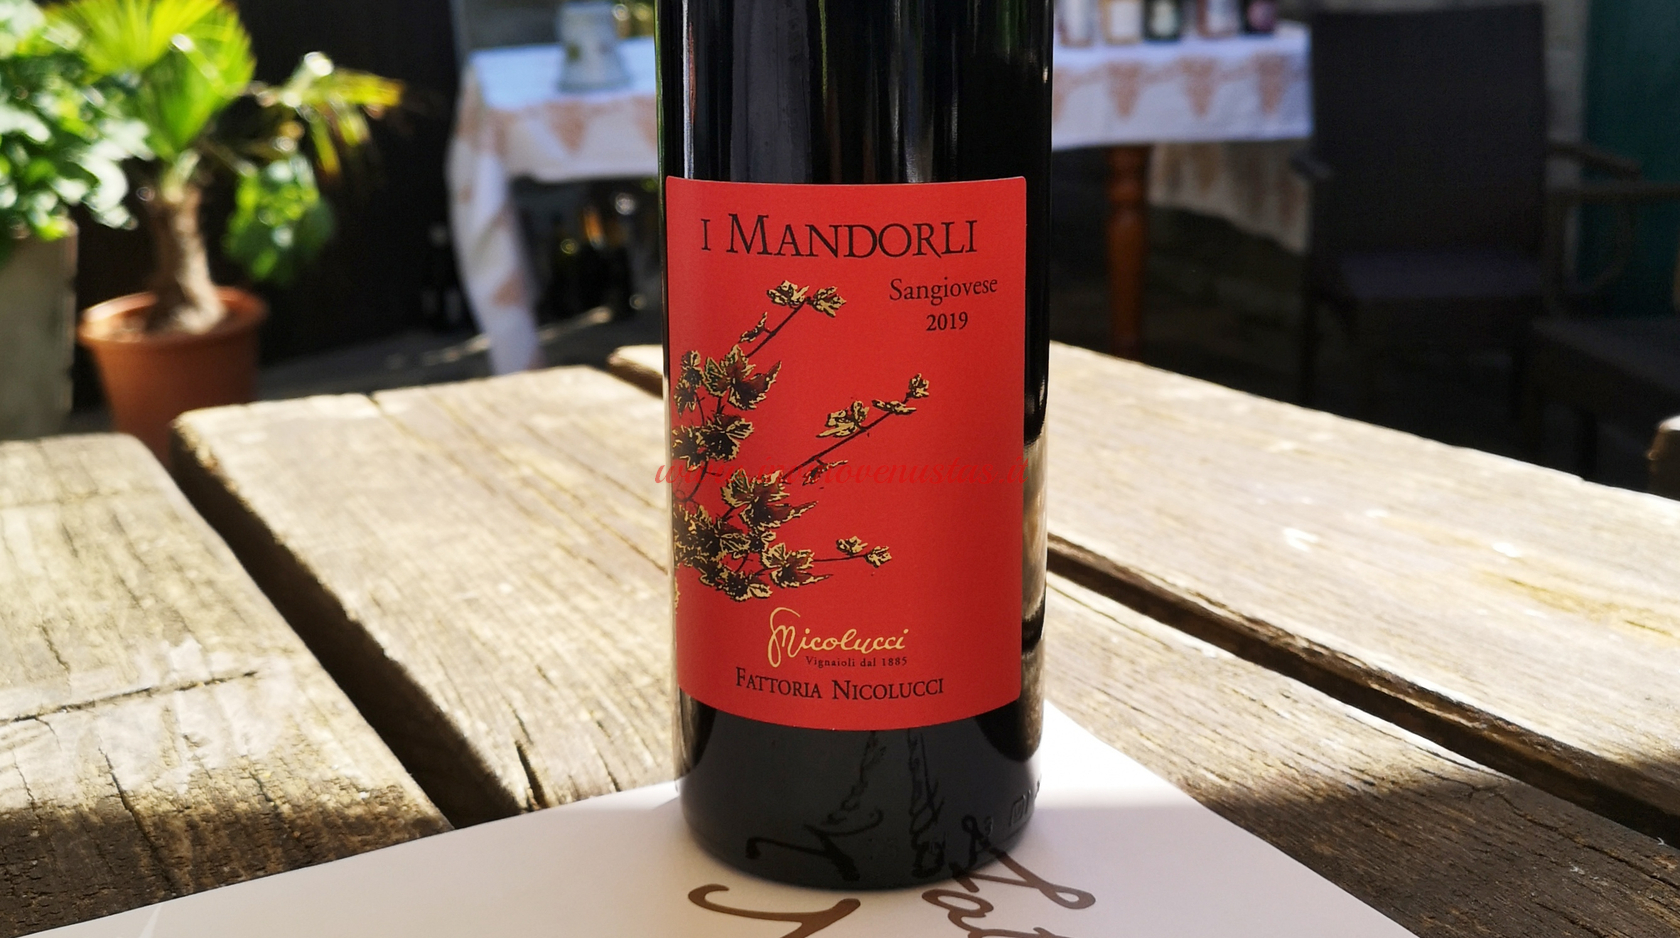 I Mandorli Sangiovese 2019 Vini Nicolucci